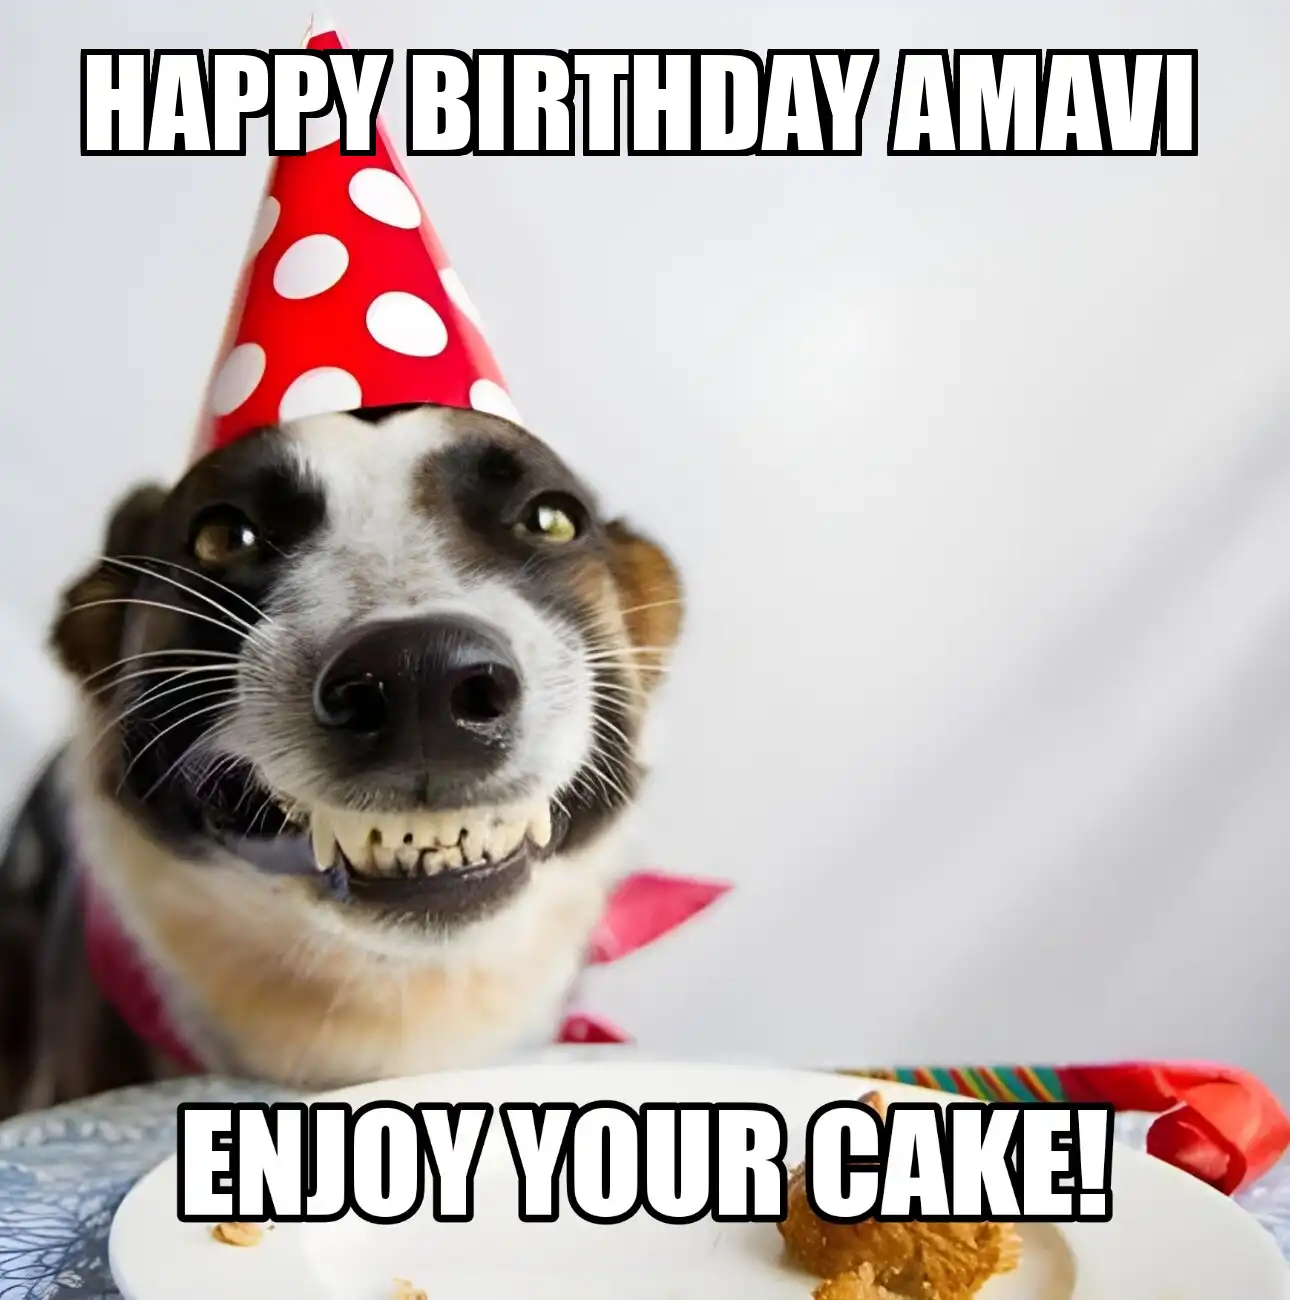 Happy Birthday Amavi Enjoy Your Cake Dog Meme